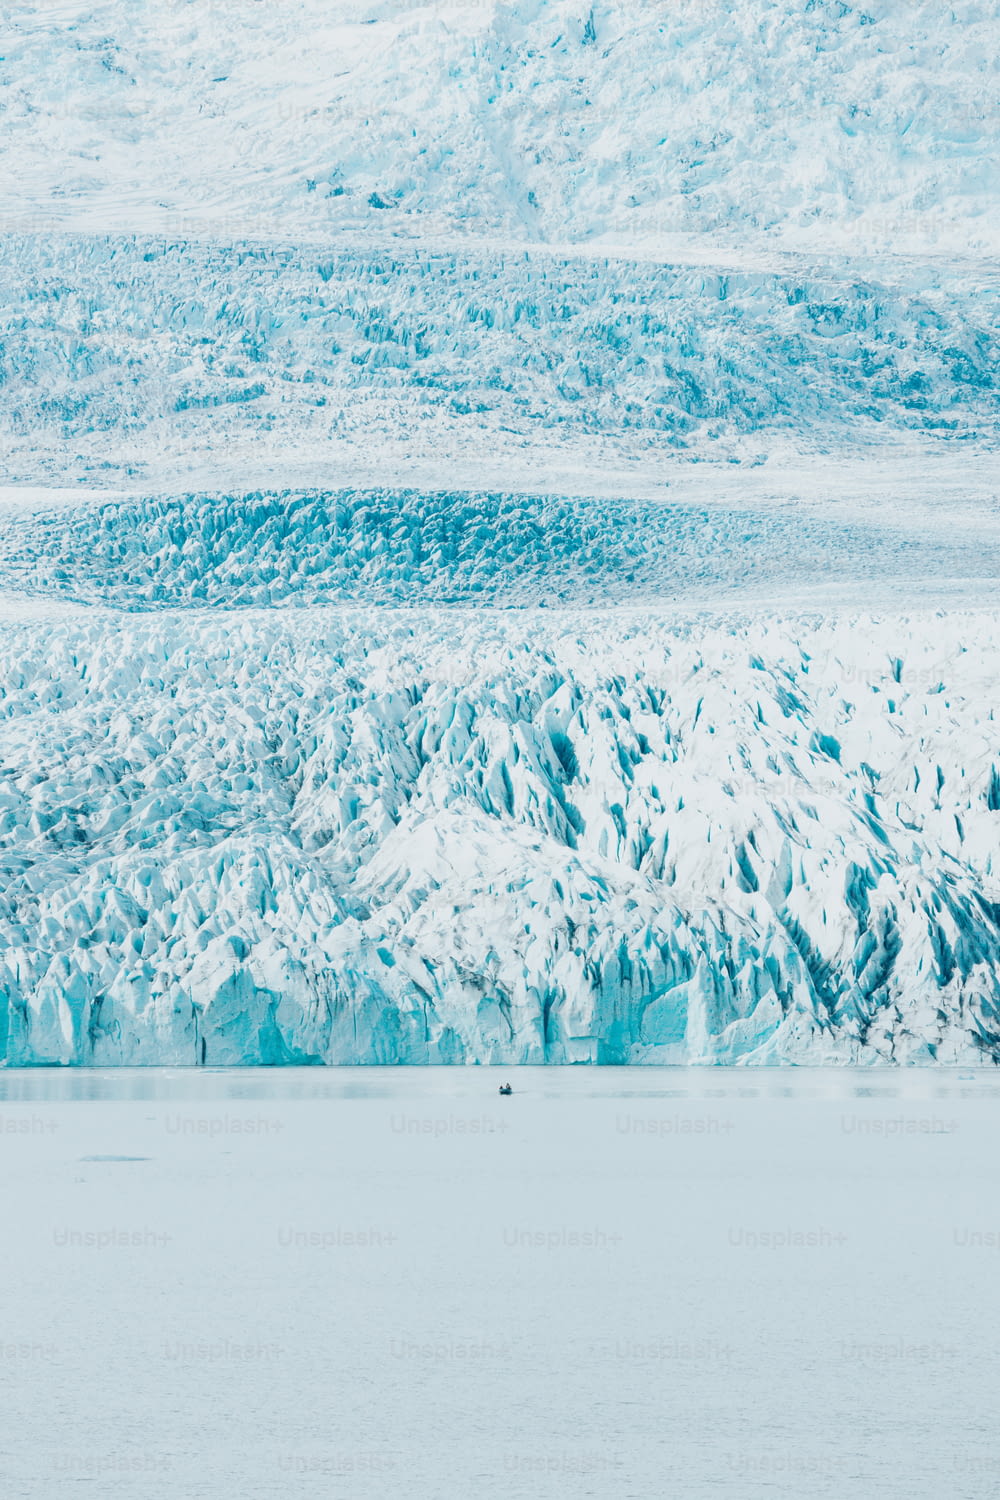 Un groupe de personnes sur un bateau devant un glacier